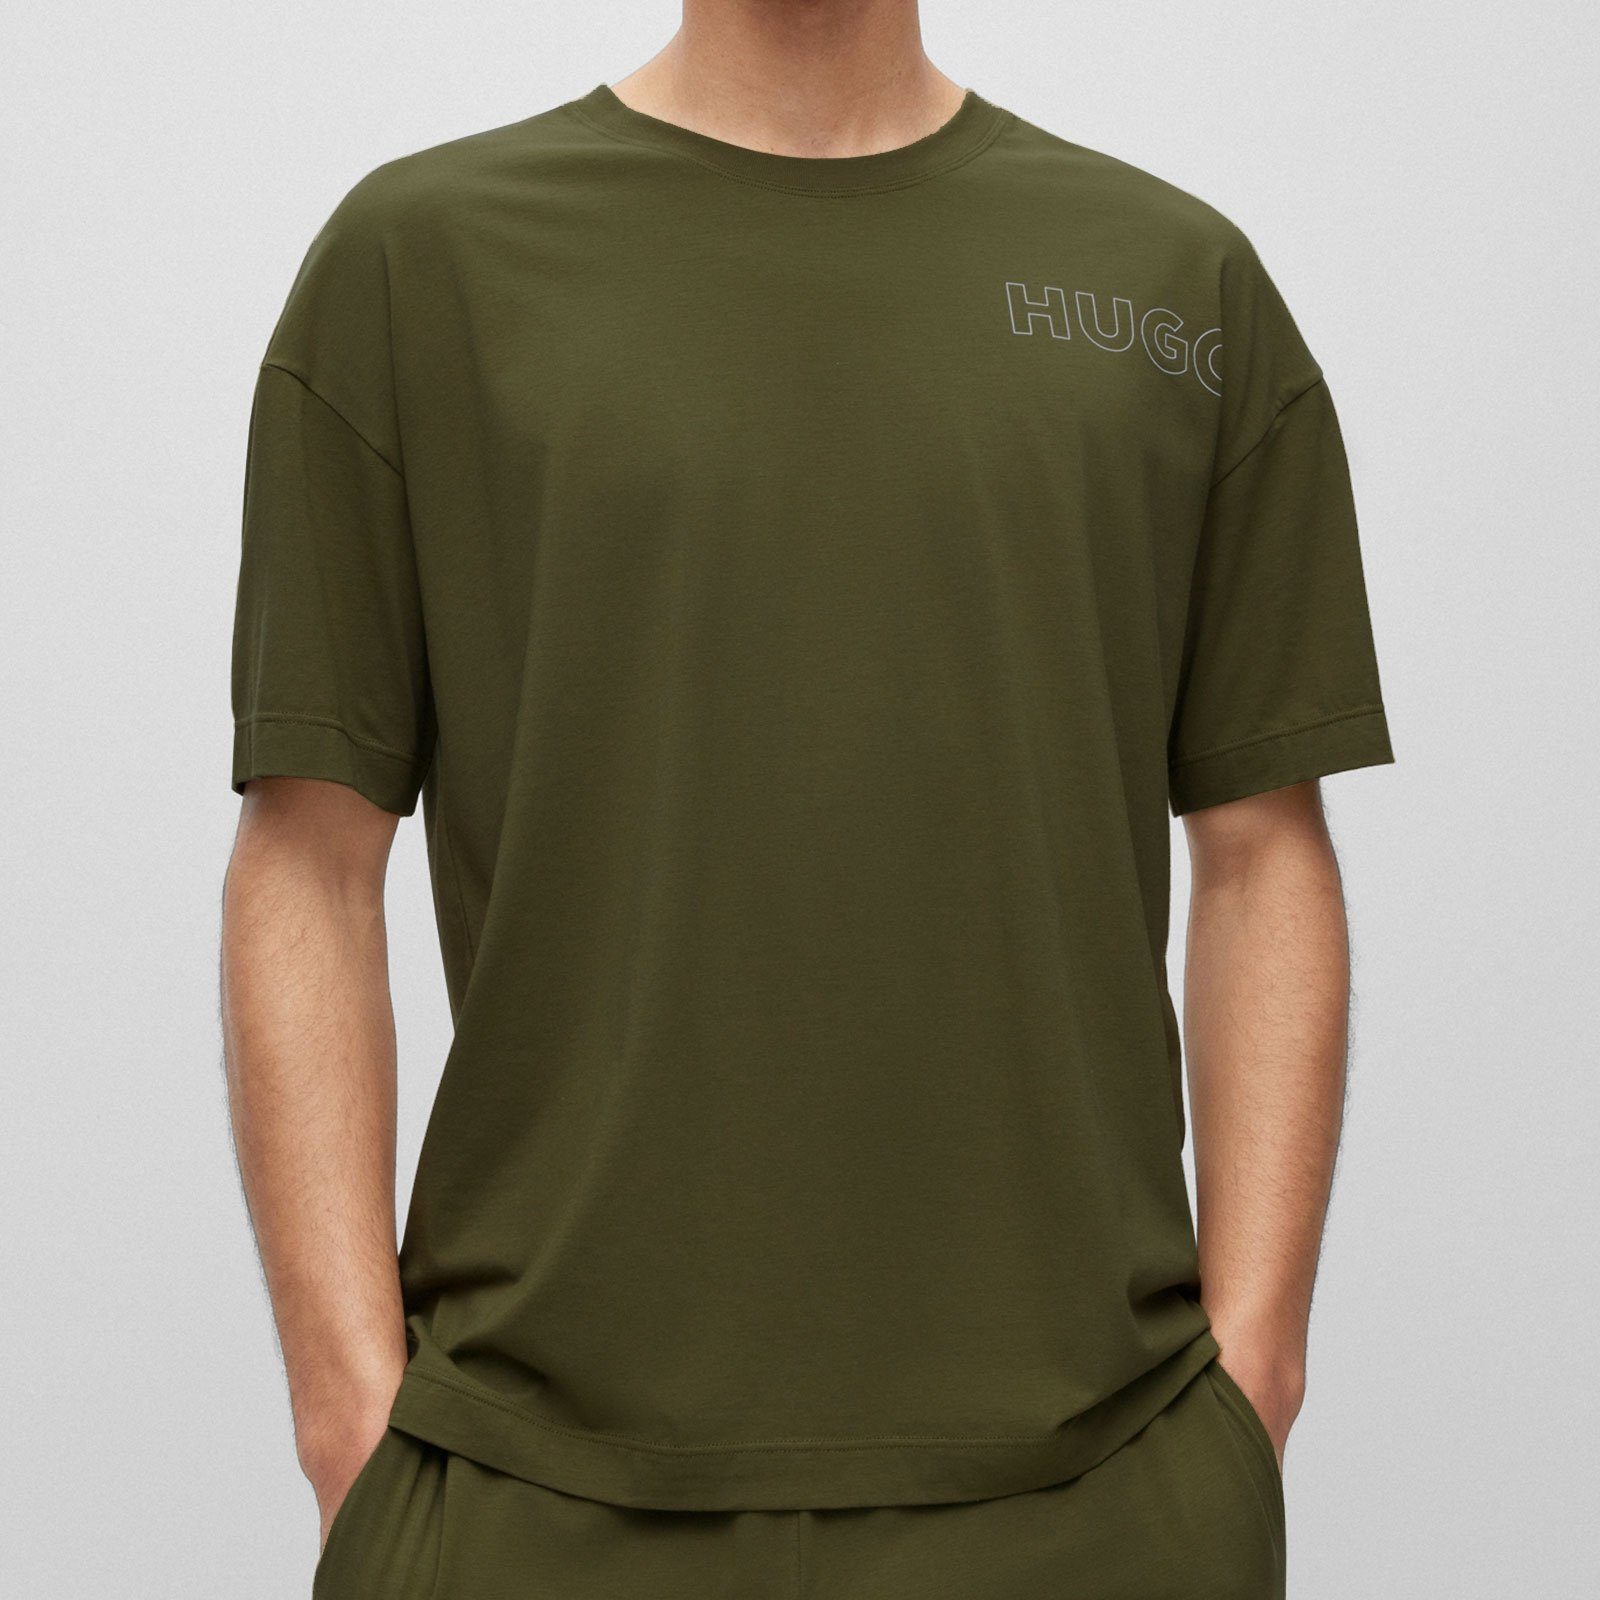 Unite Logo green auf open HUGO mit umrissenem T-Shirt T-Shirt der Brust 345 linken